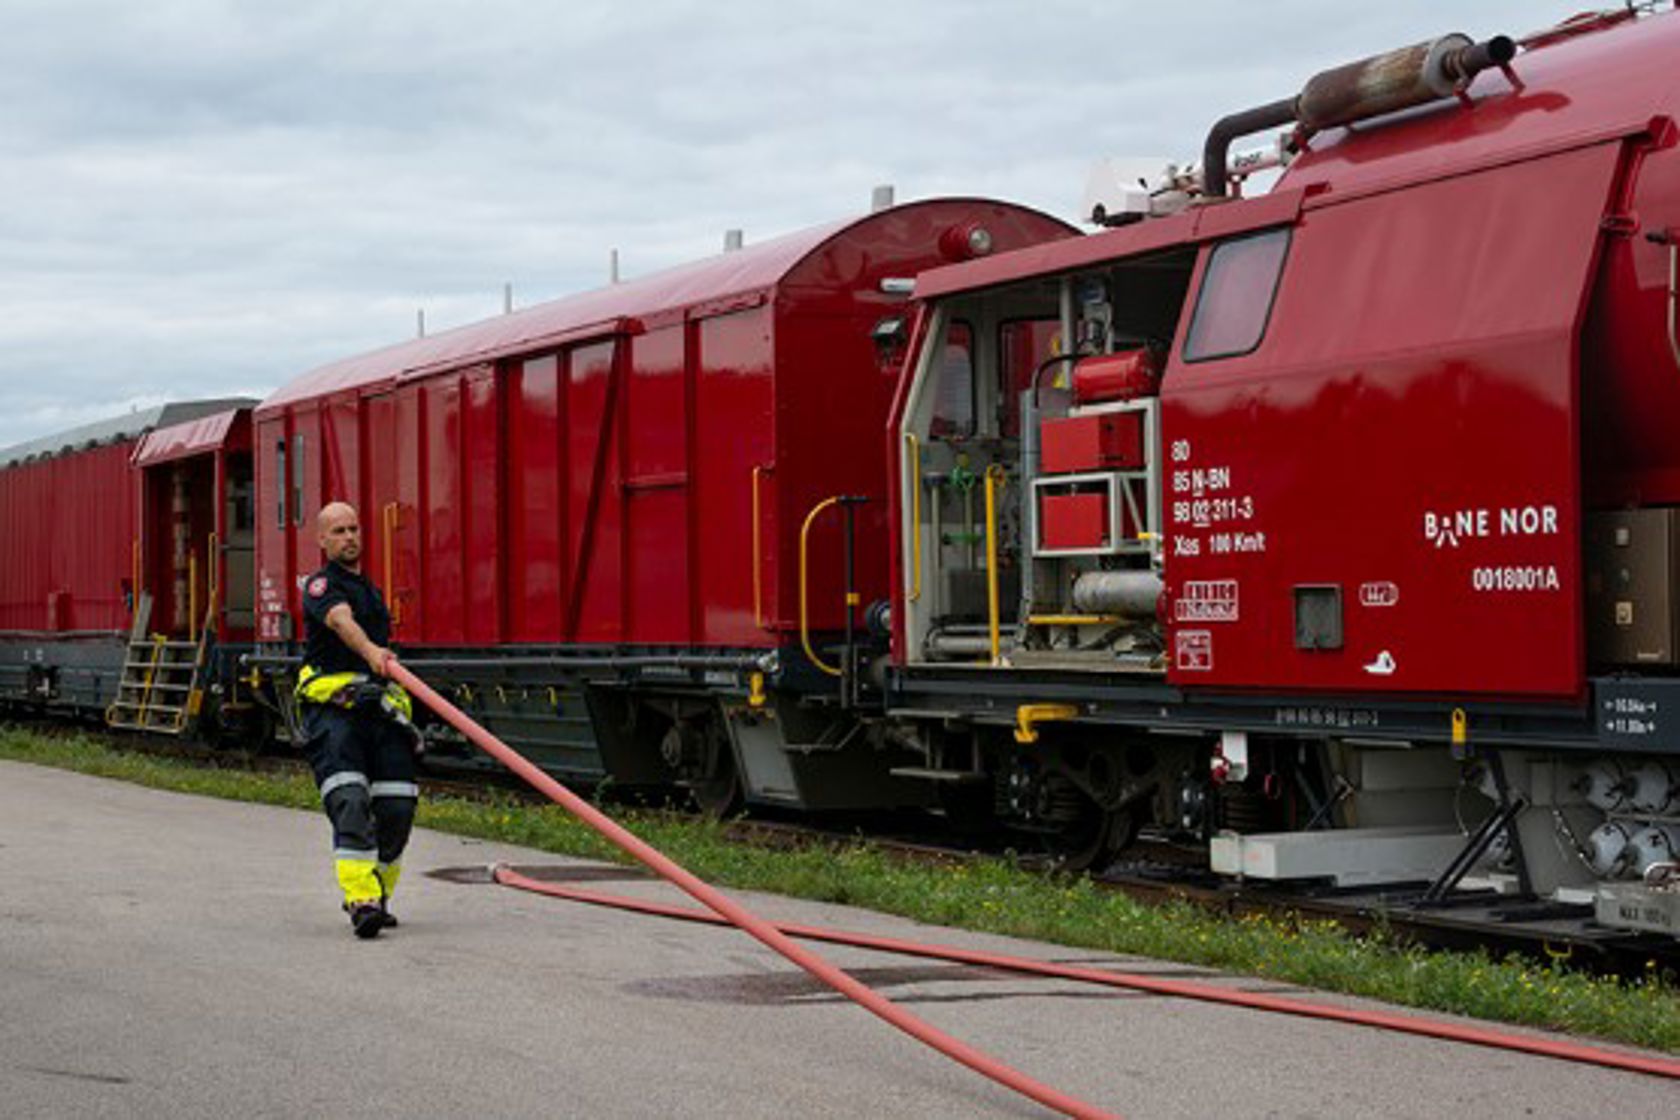 Bilde av en brannmann som holder en brannslange, med et rødt tog i bakgrunn.